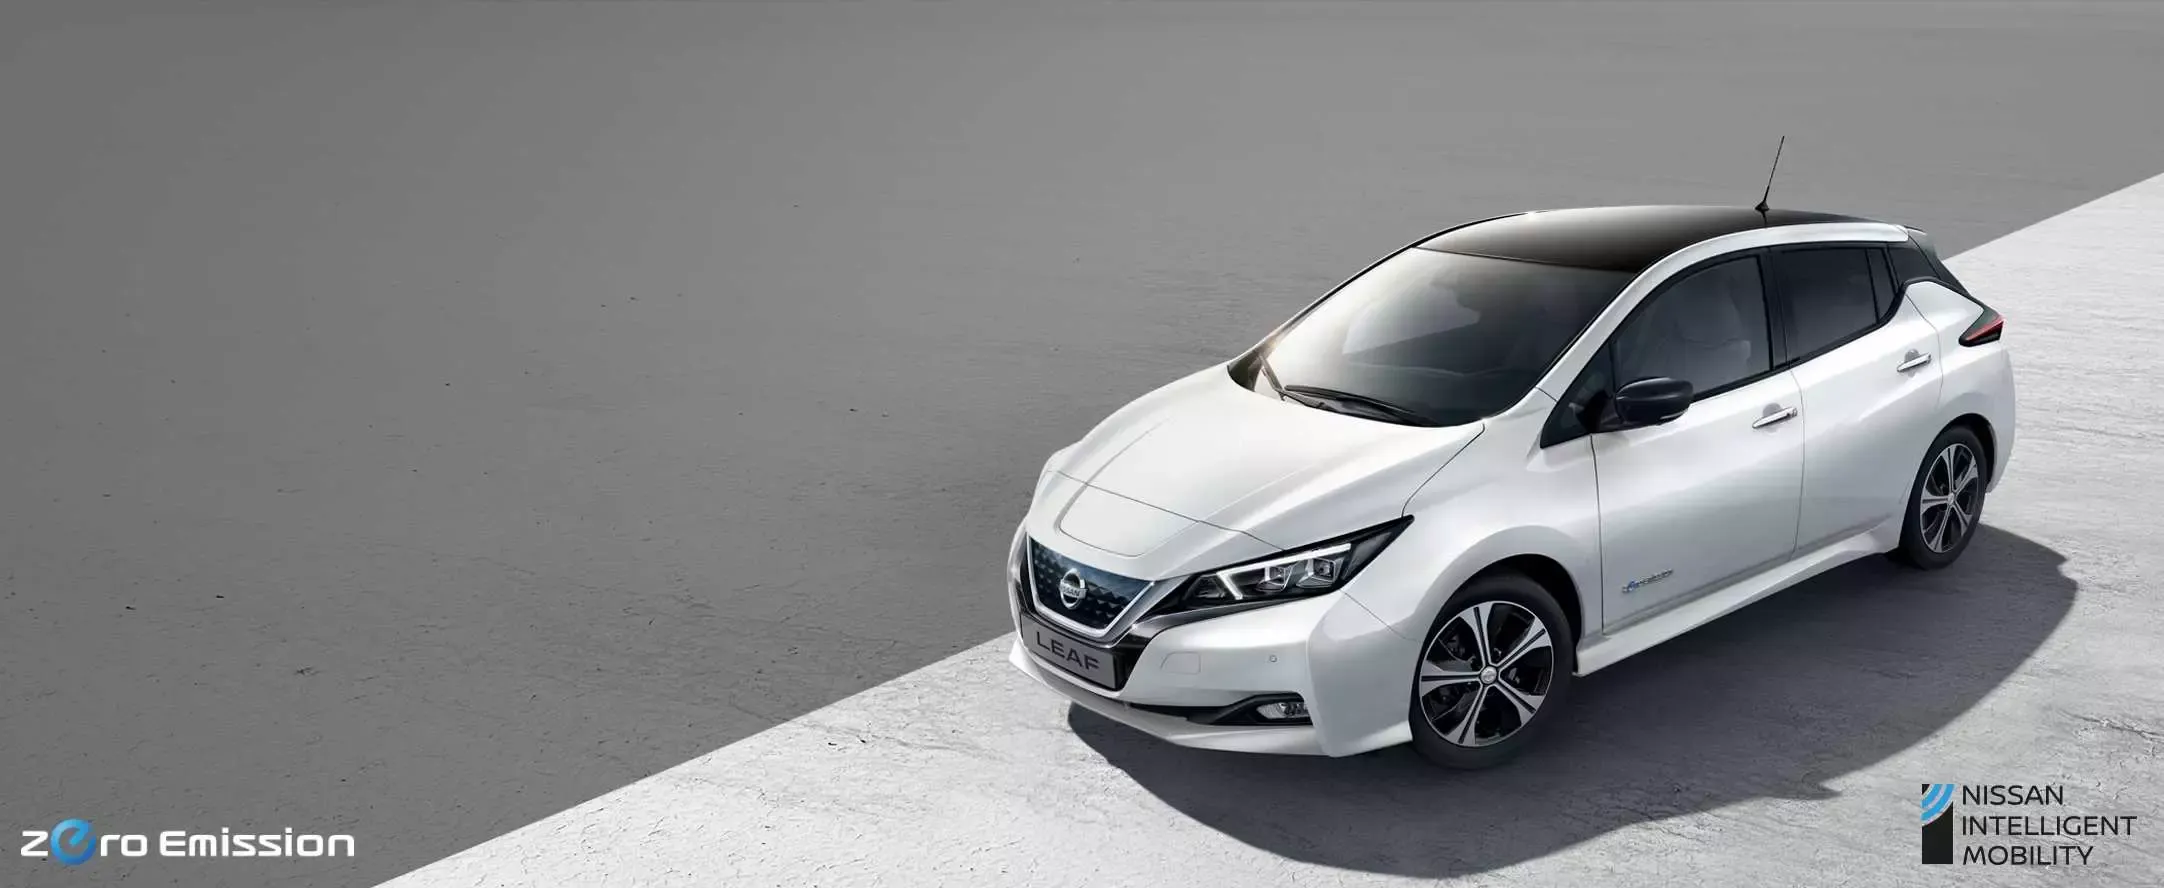 Harga Nissan Leaf Terbaru, Spesifikasi dan Interior 2022!